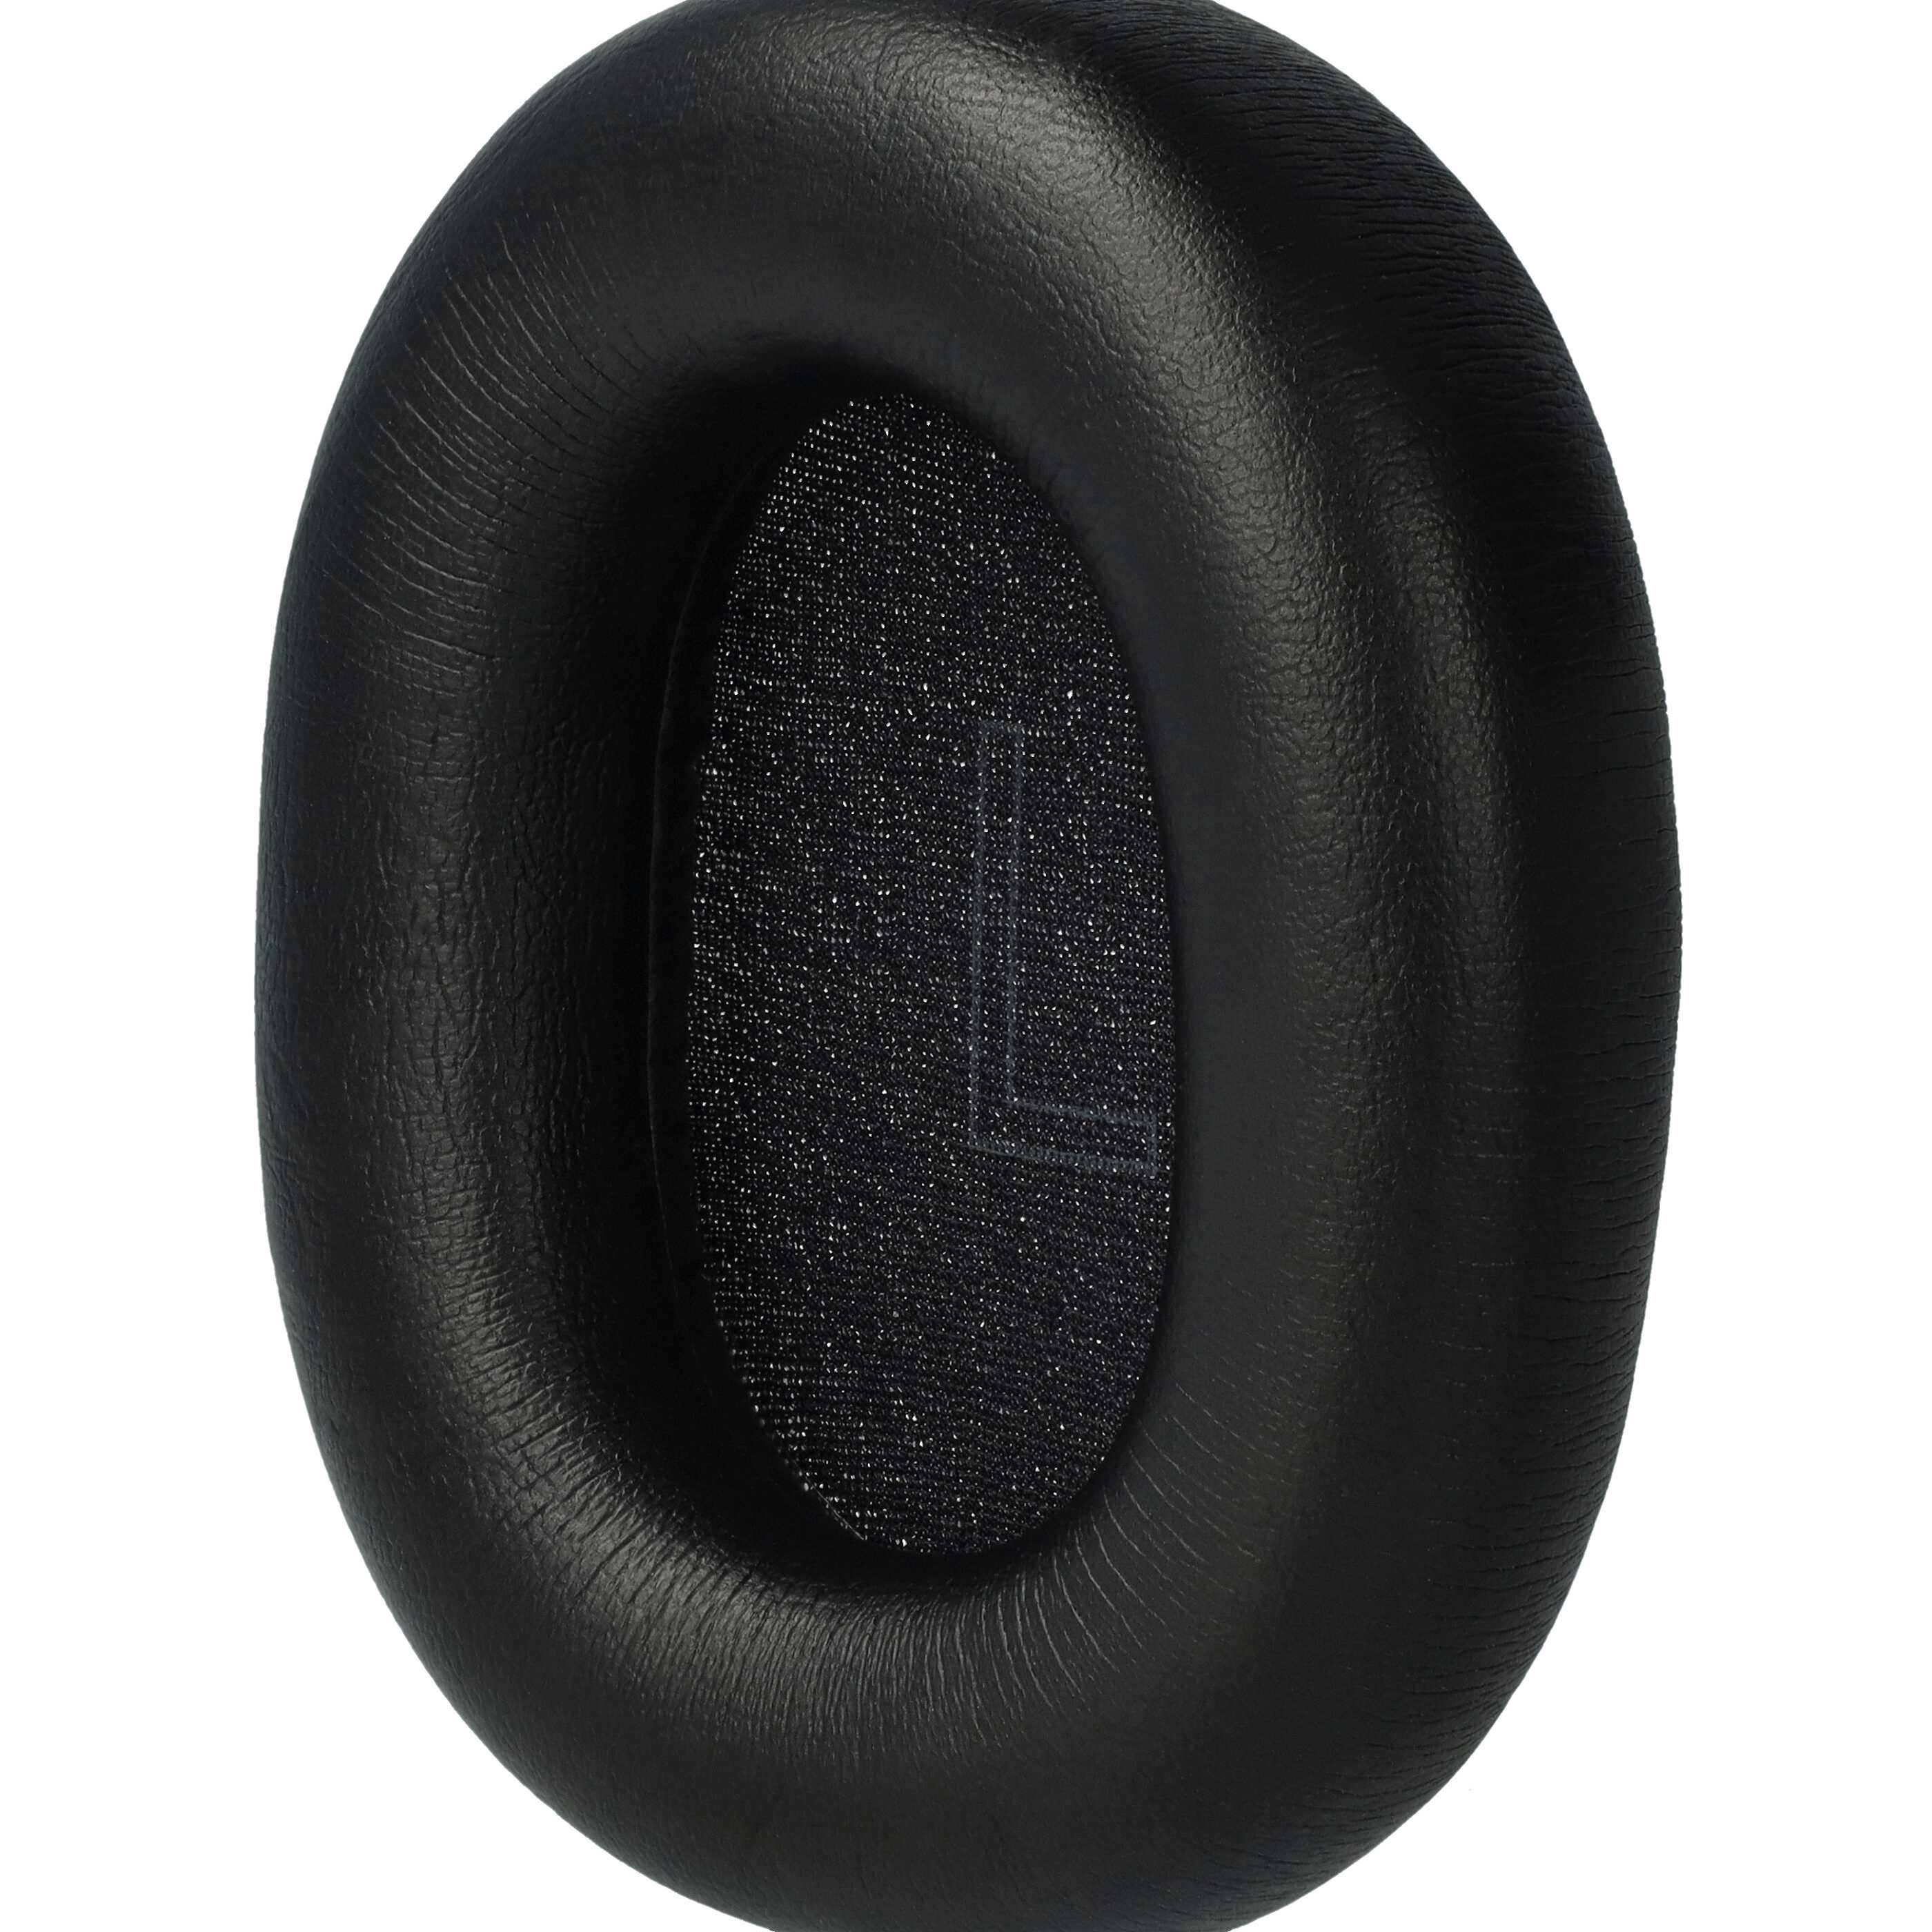 2x Ohrenpolster für Technics EAH-A800 Kopfhörer u.a., 10 x 8 cm, Schwarz